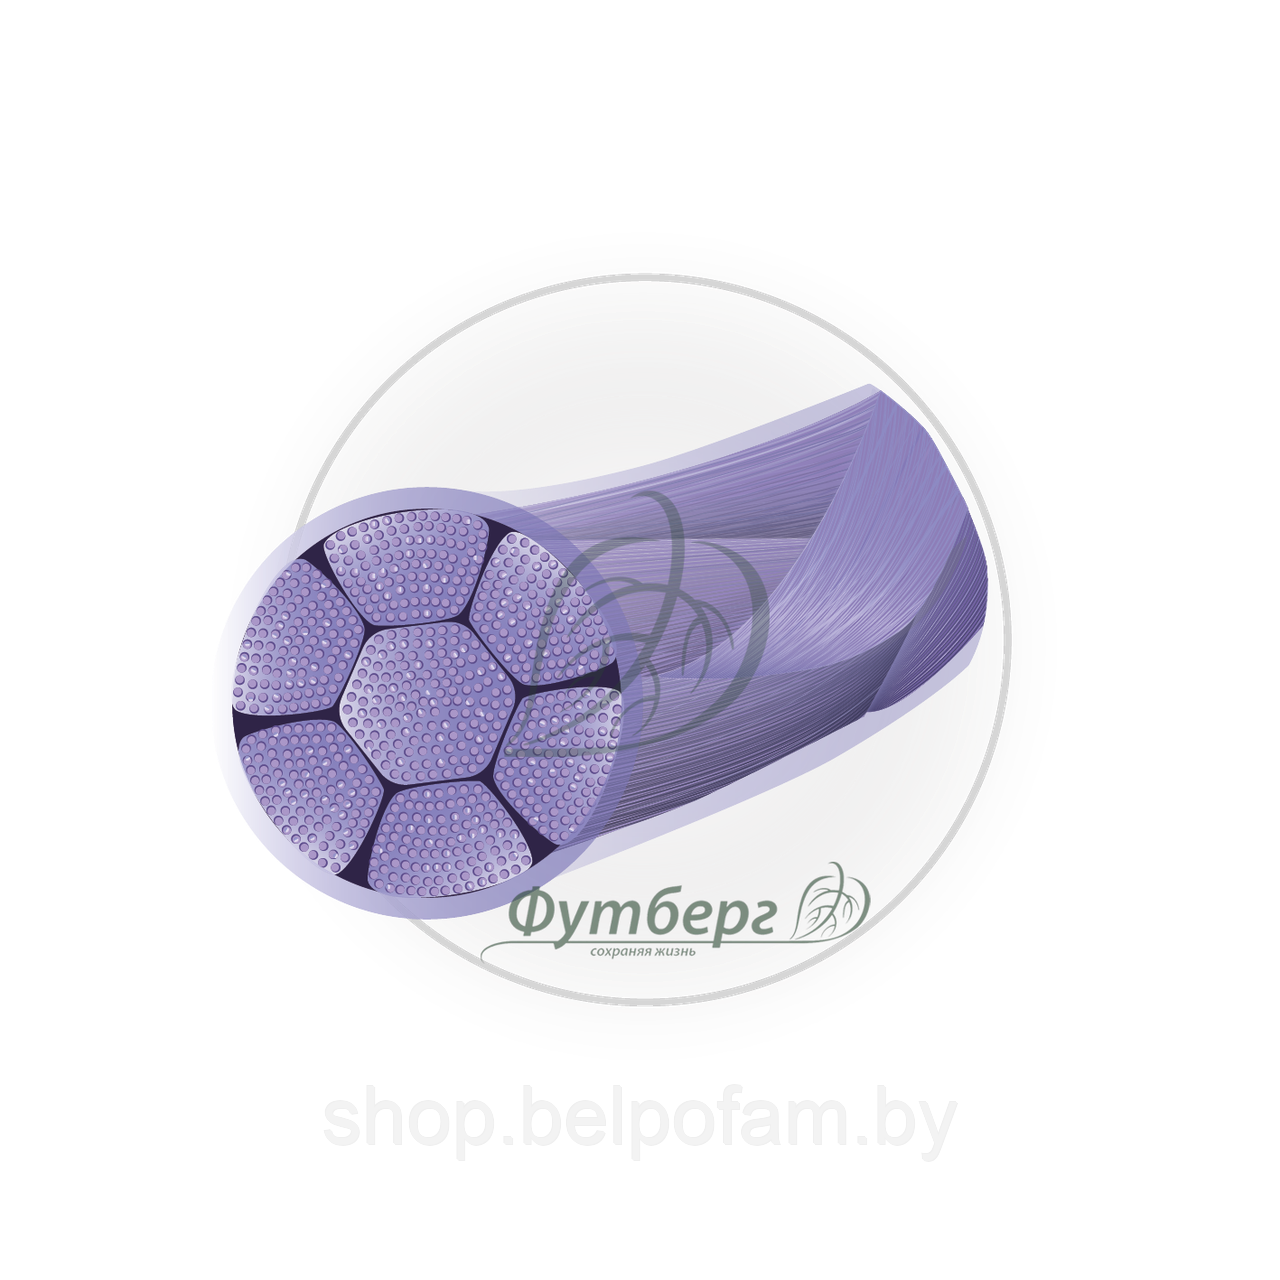 Материал шовный хирургический Полигликолид,фиолет.,Metric 3 USP 2-0, 75 см, 1 игла обратно-реж,26 мм,изгиб 3/8